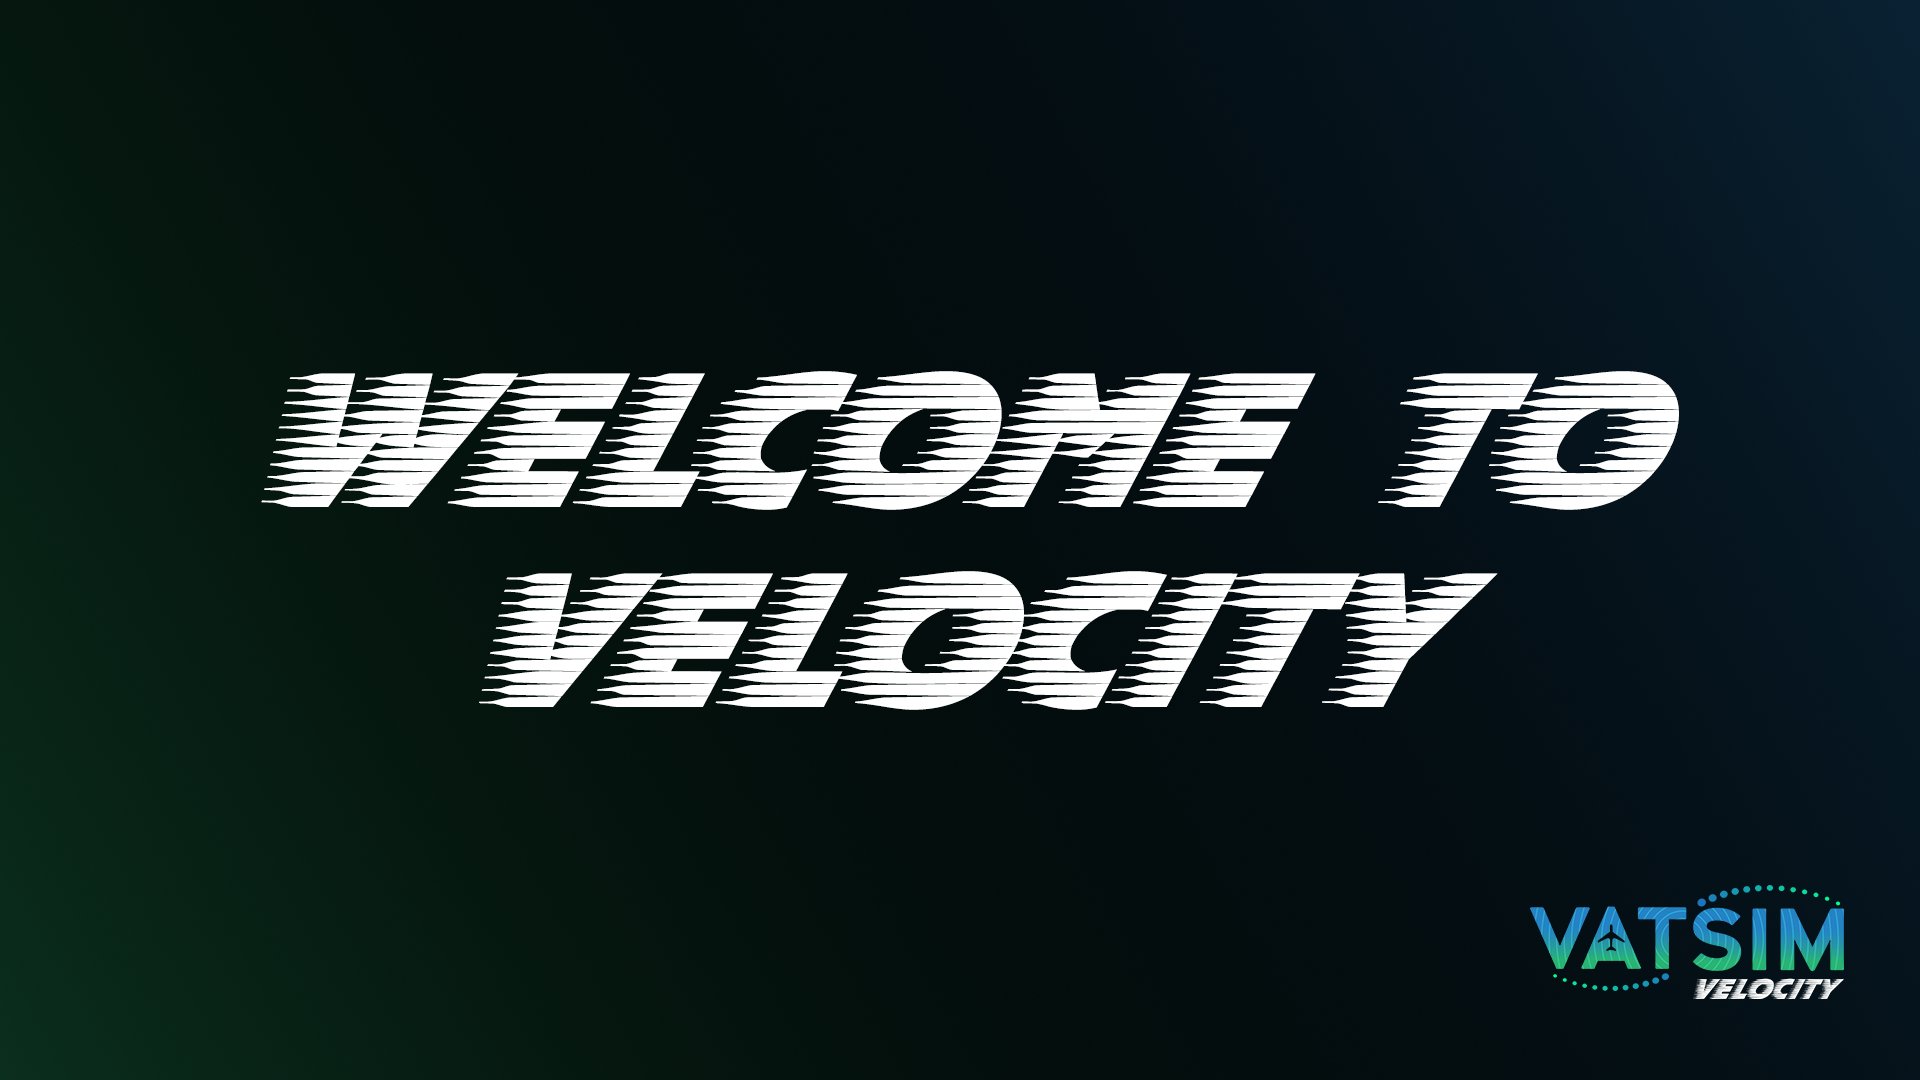 VATSIM Launches Velocity - VATSIM